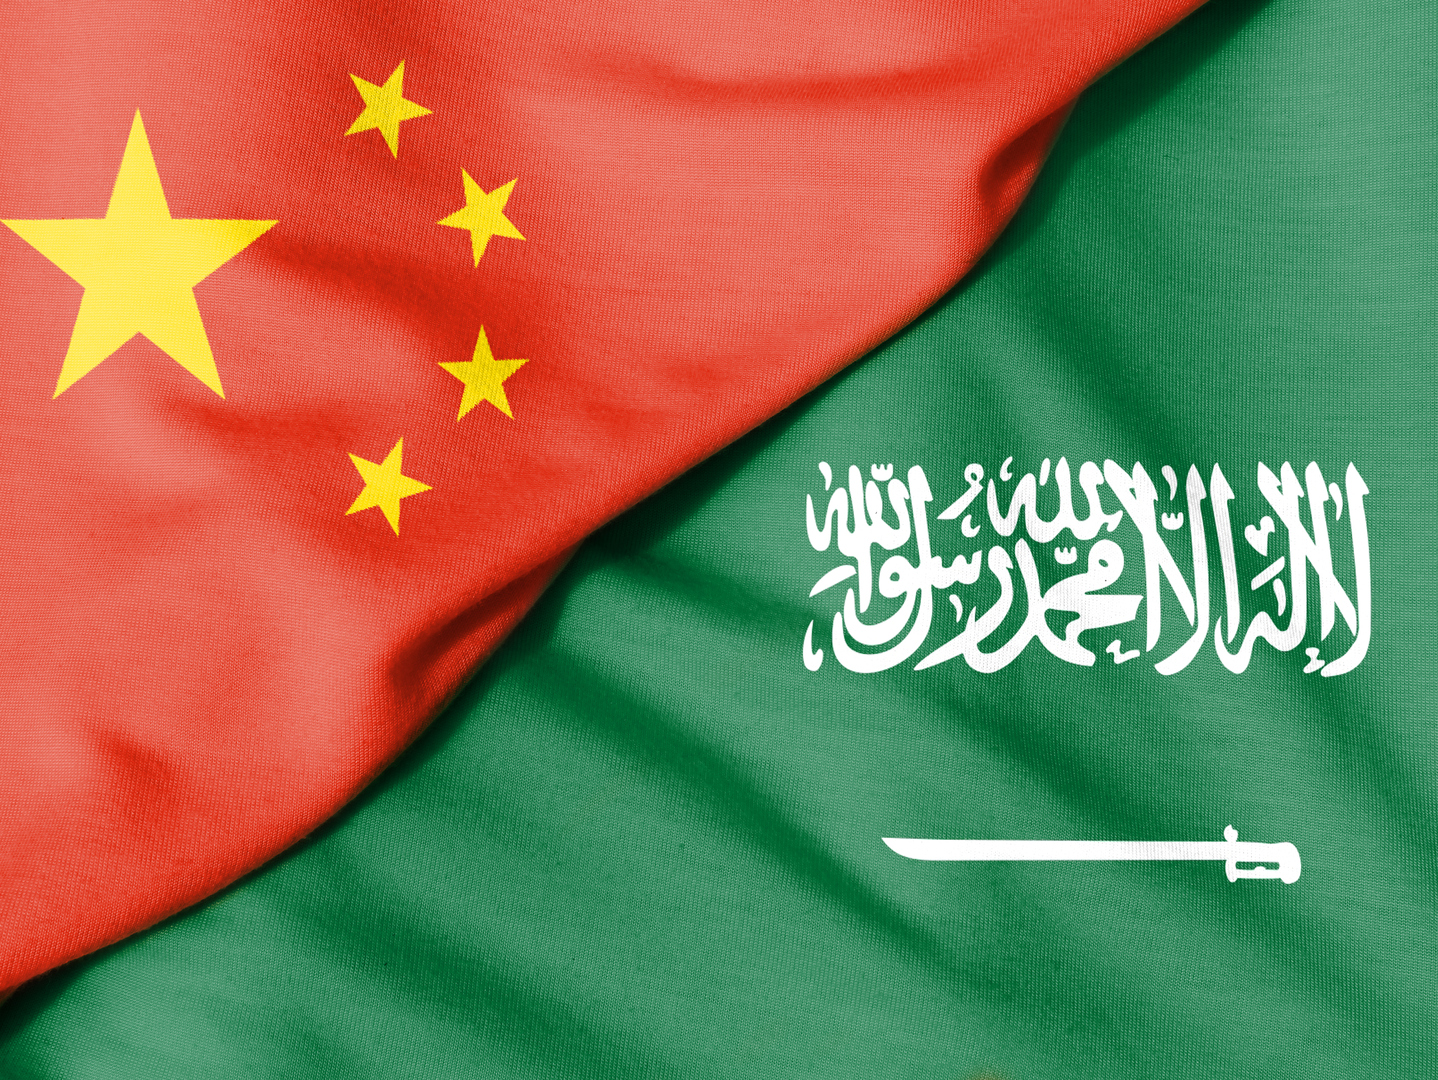 السعودية تطلق أكبر حملة ترويجية دولية متكاملة في الصين